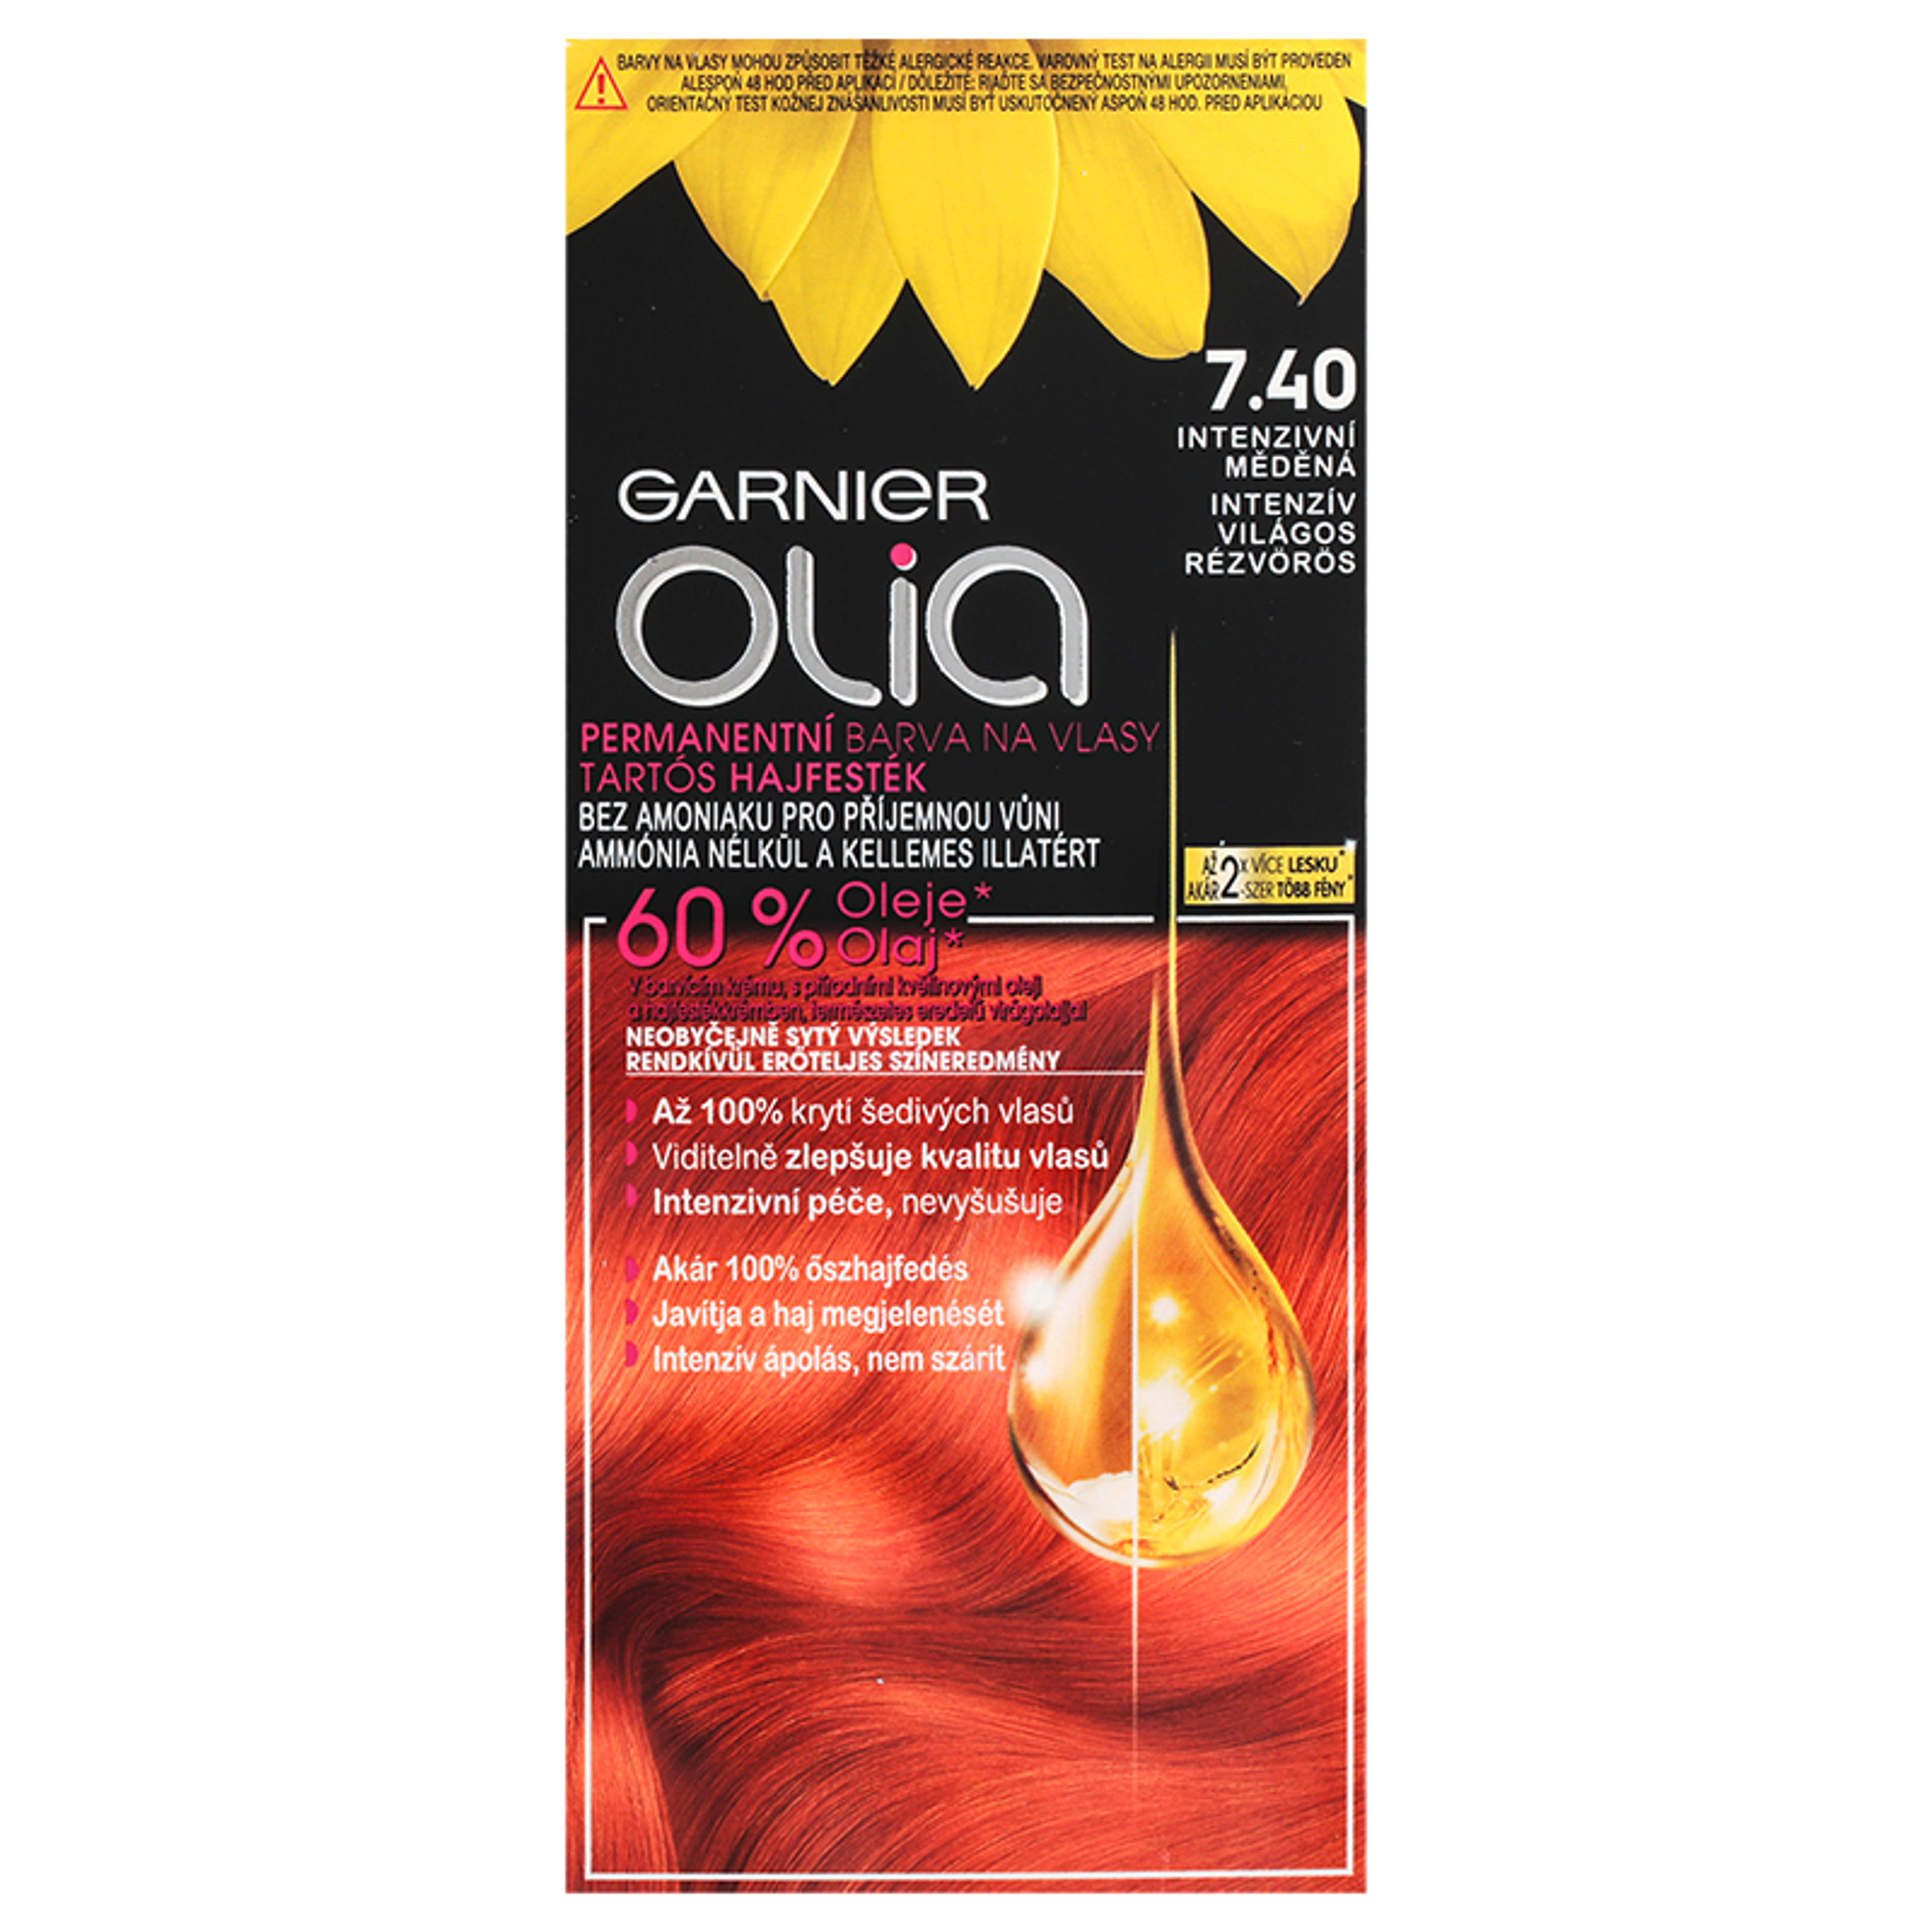 Garnier Olia tartós hajfesték 7.40 Intenzív világos rézvörös - 1 db-2